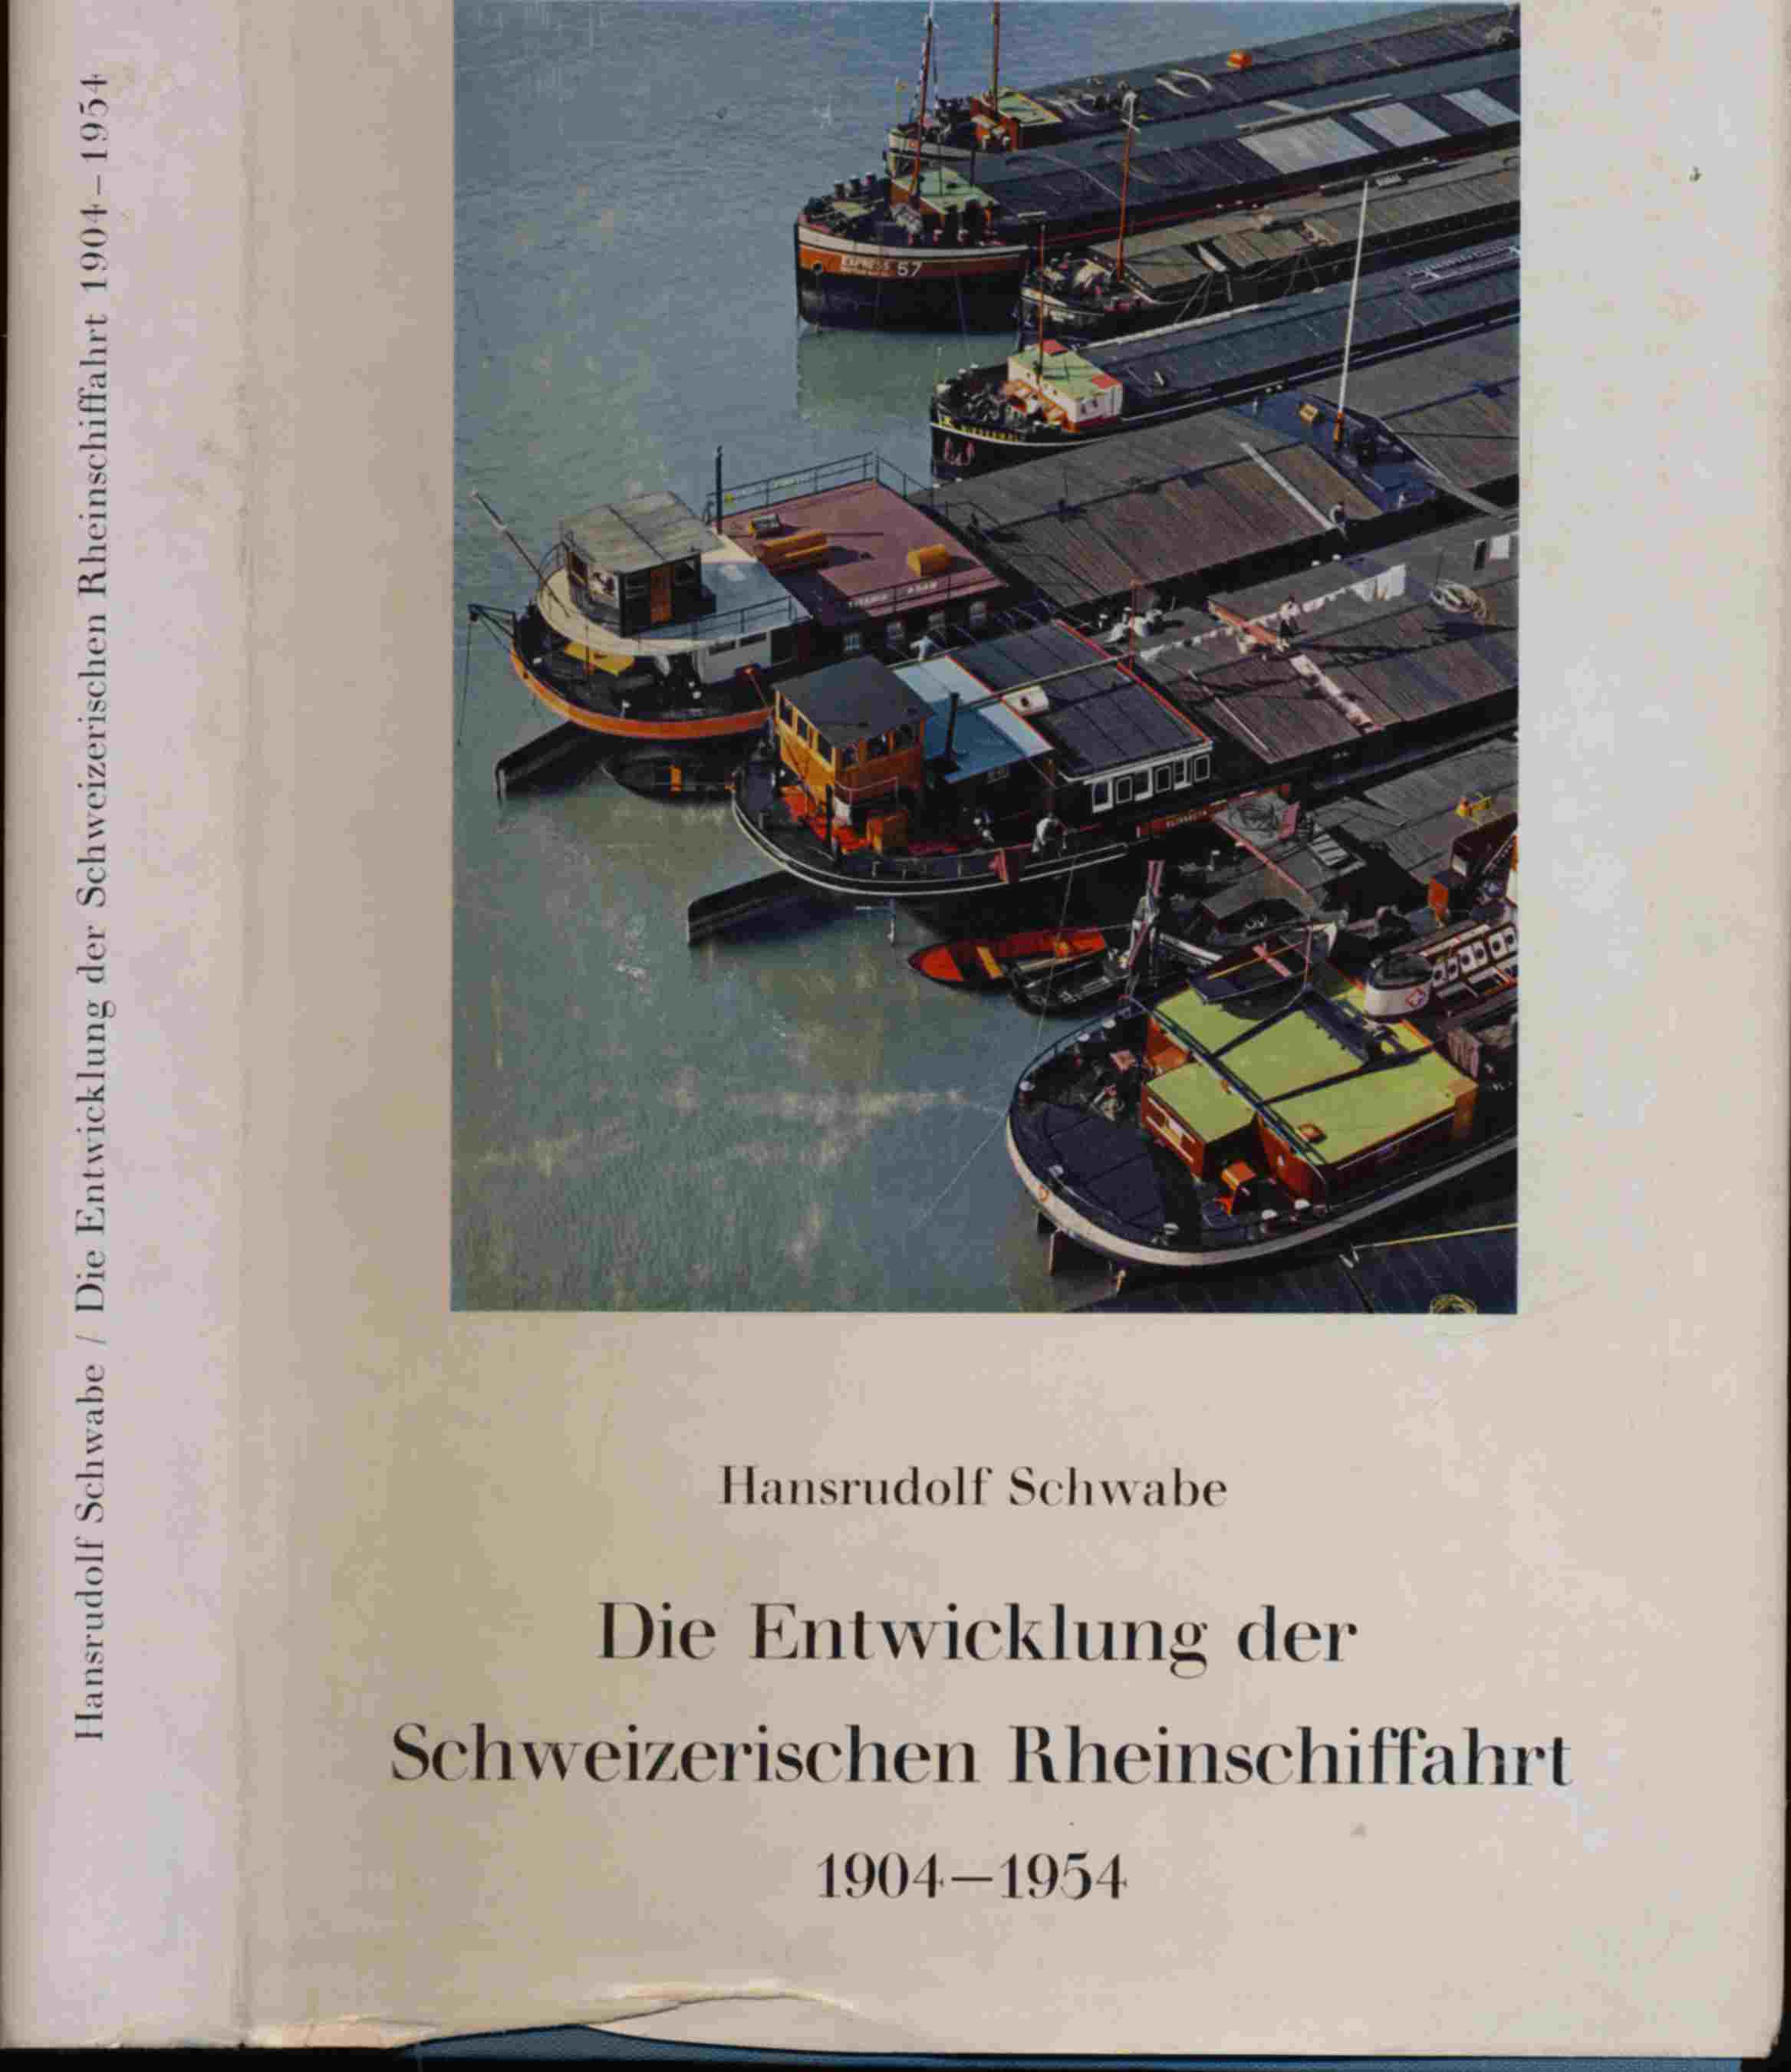 SCHWABE, Hansrudolf  Die Entwicklung der Schweizerischen Rheinschiffahrt 1904-1954. 